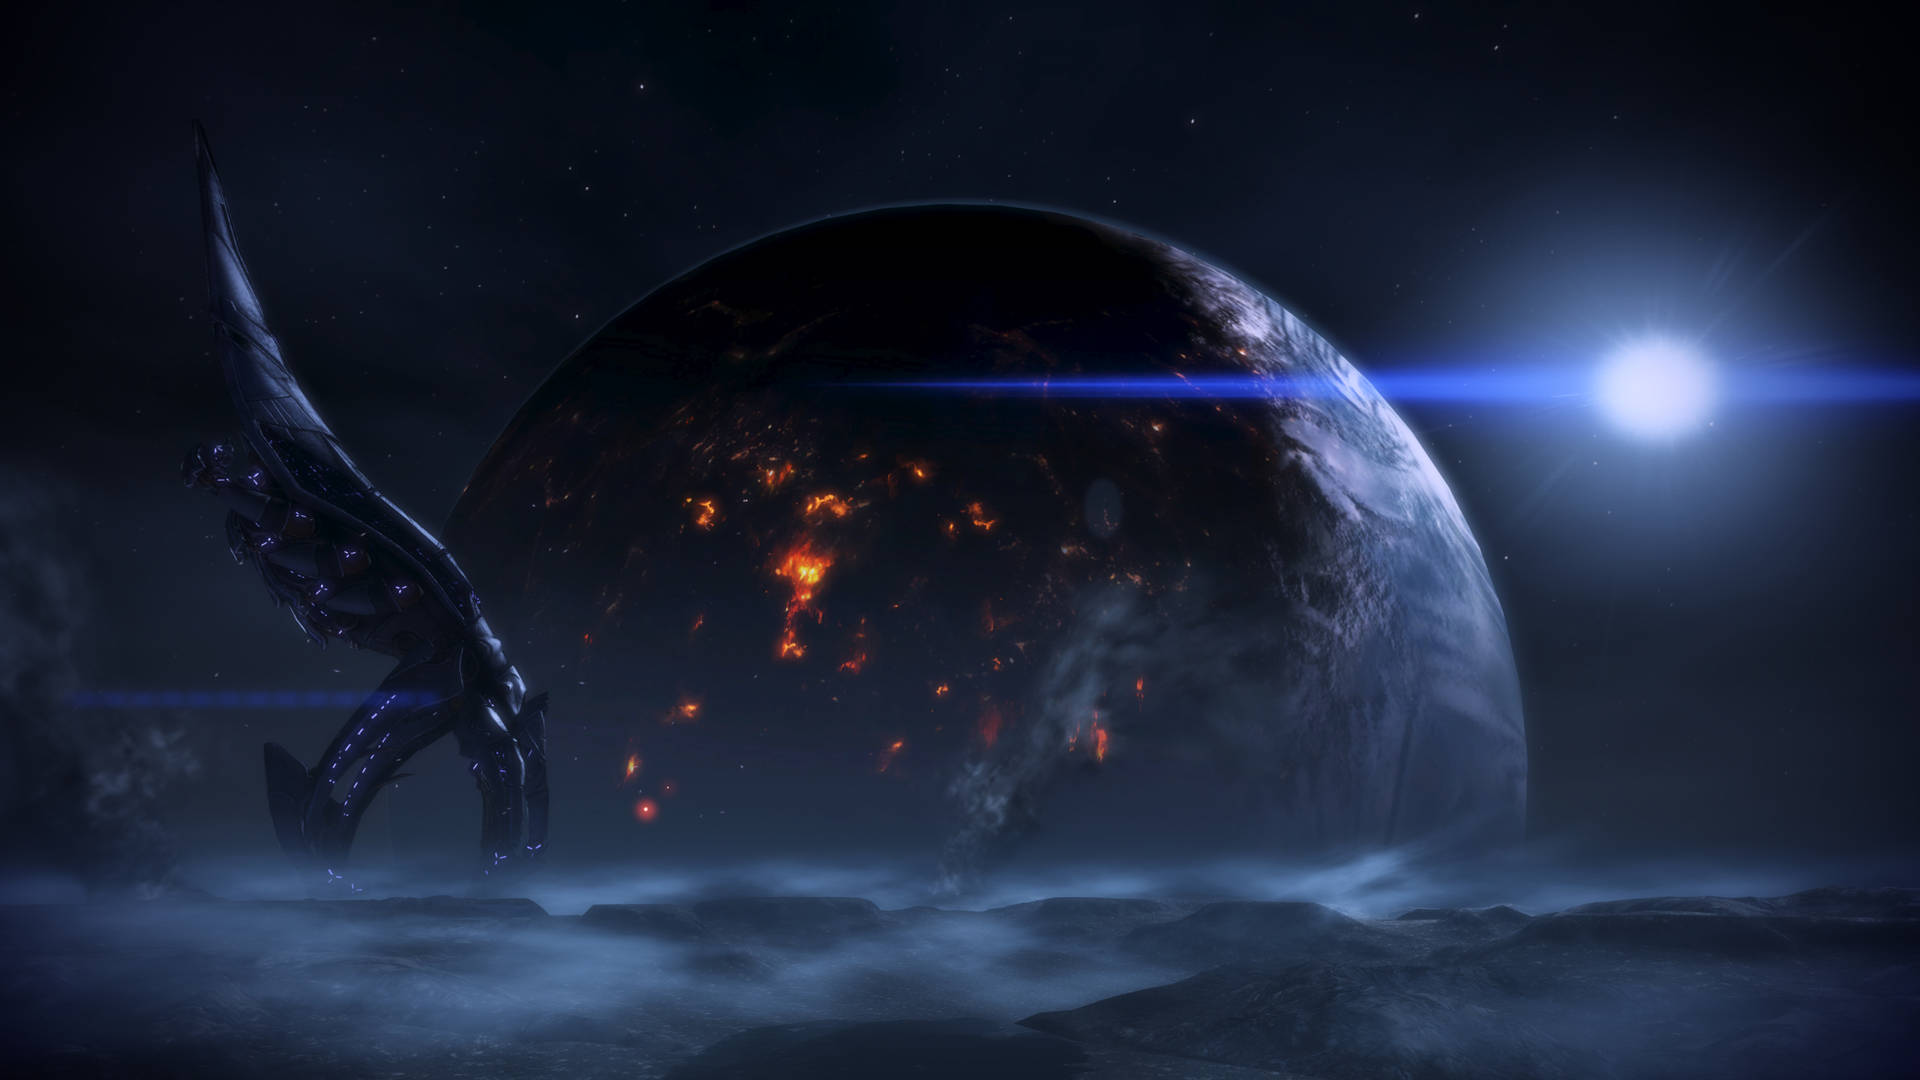 Mass Effect 3 Reaper Wallpaper